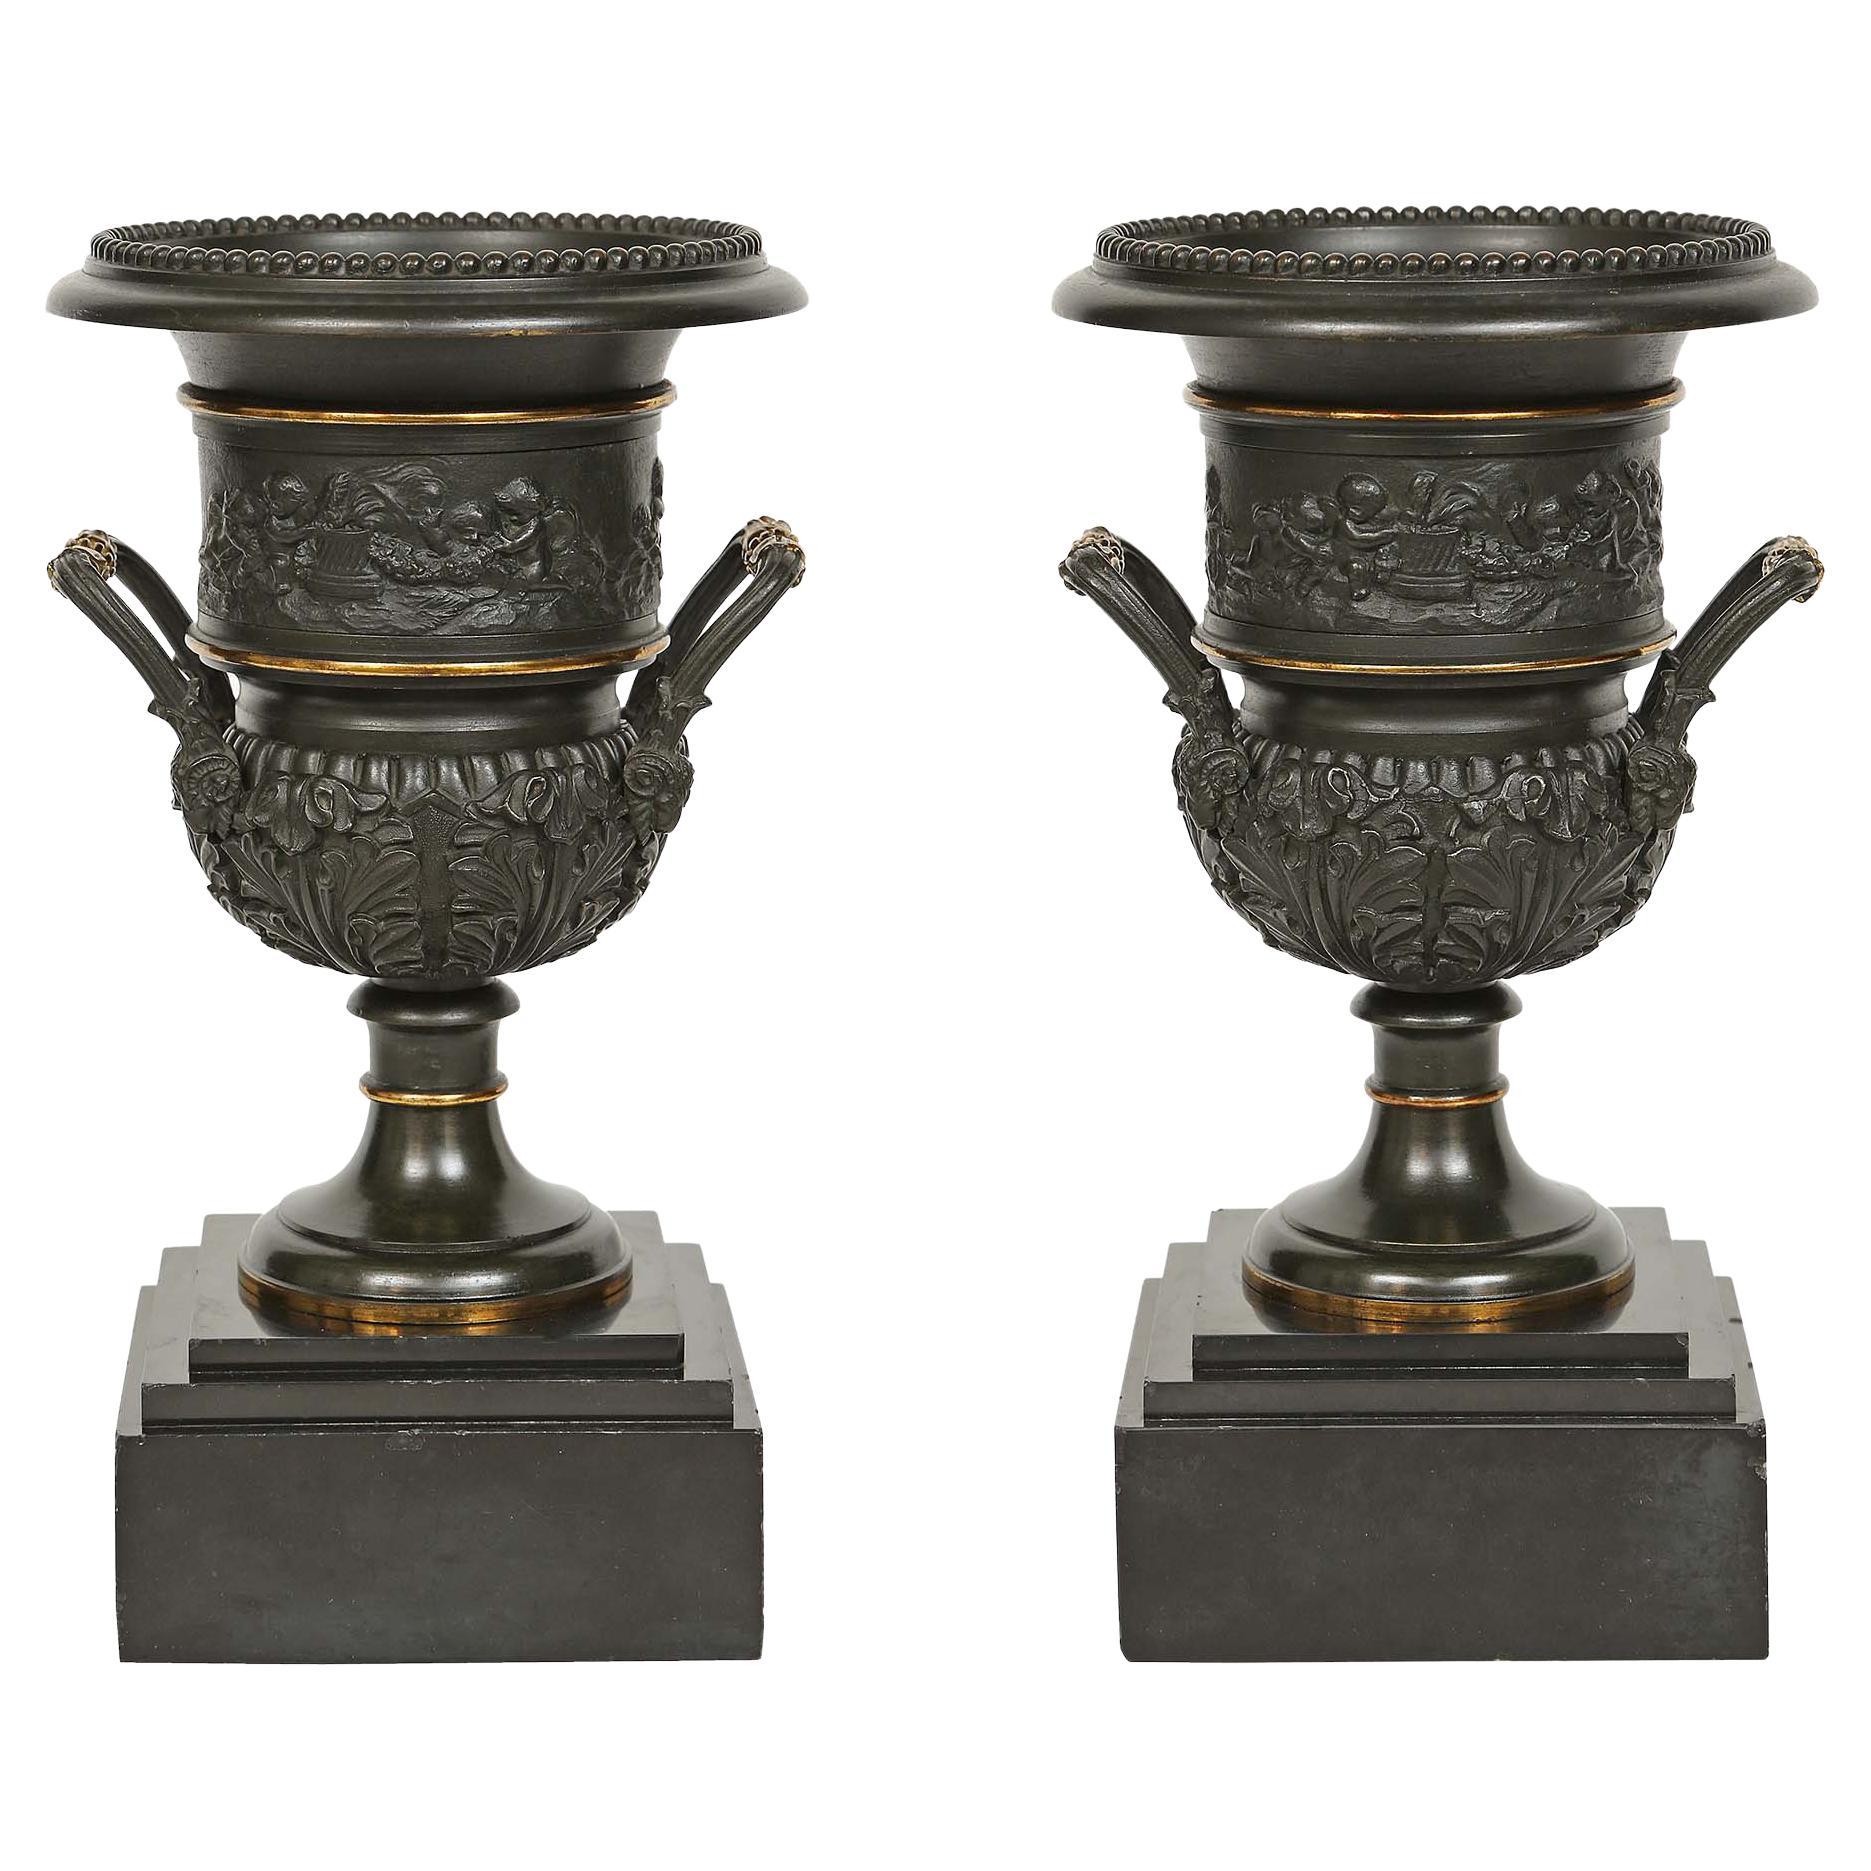 Paire d'urnes en bronze de style néo-classique du 19ème siècle